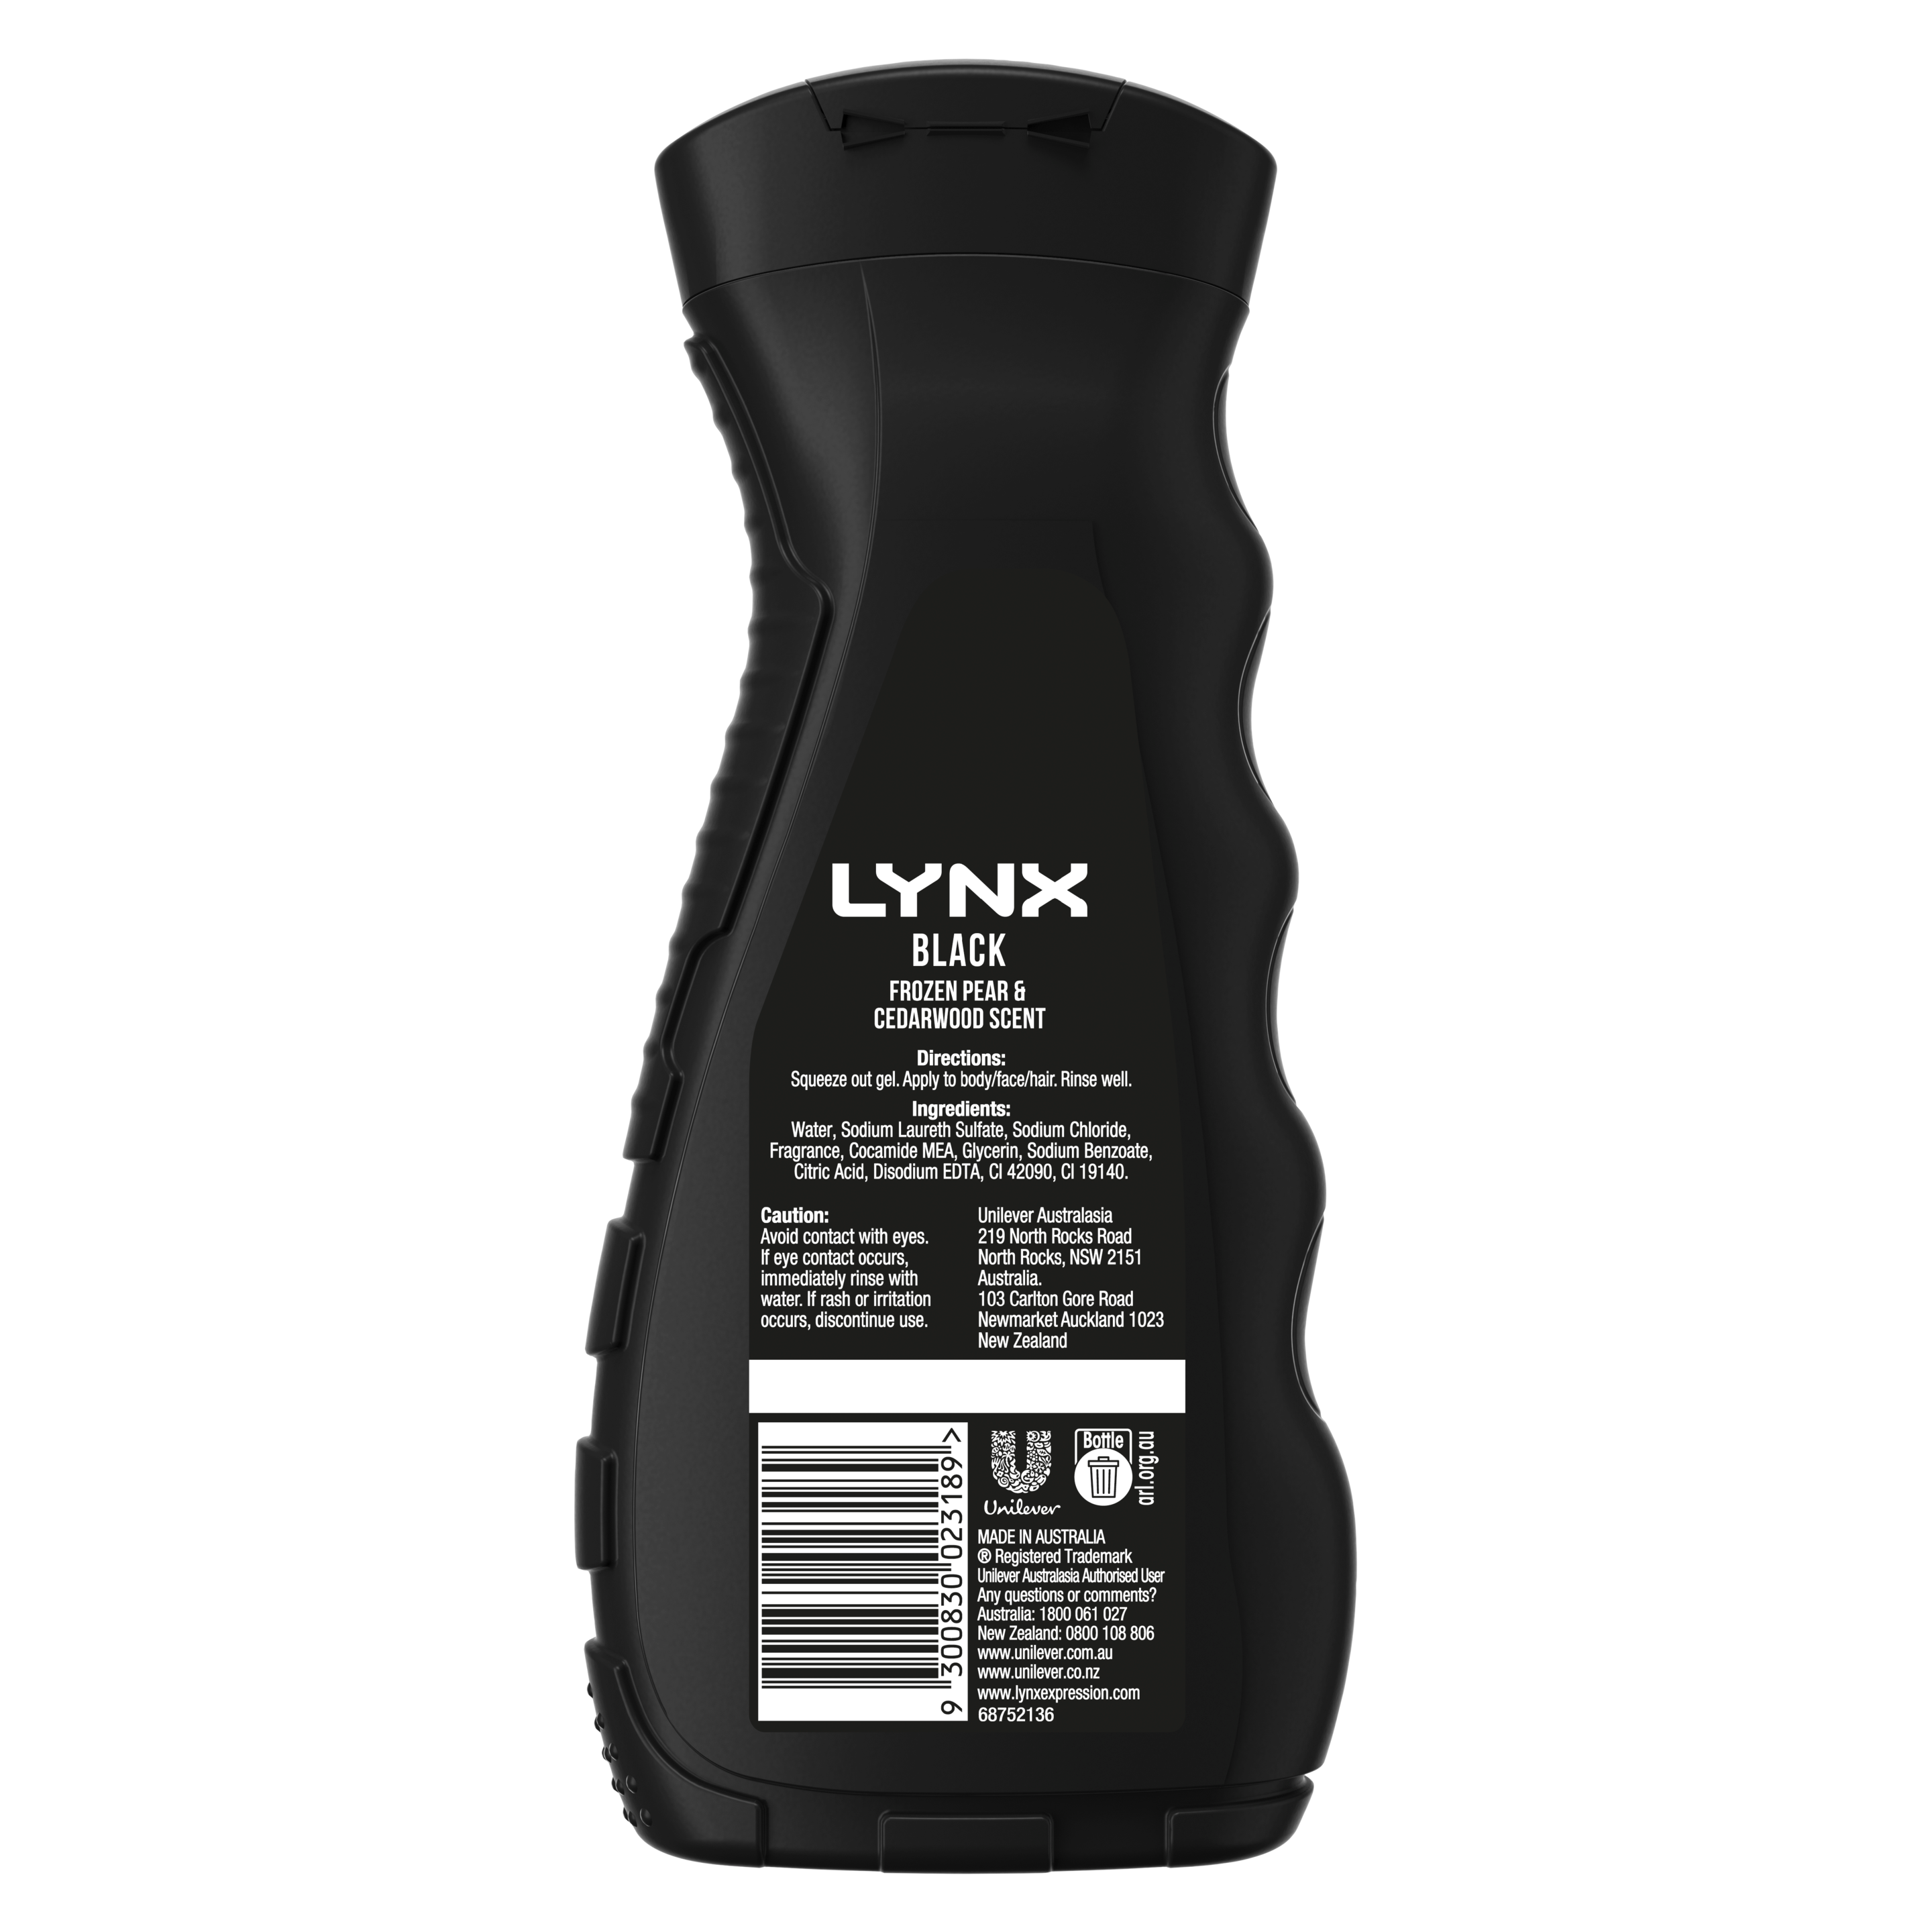 Lynx Black Body Wash